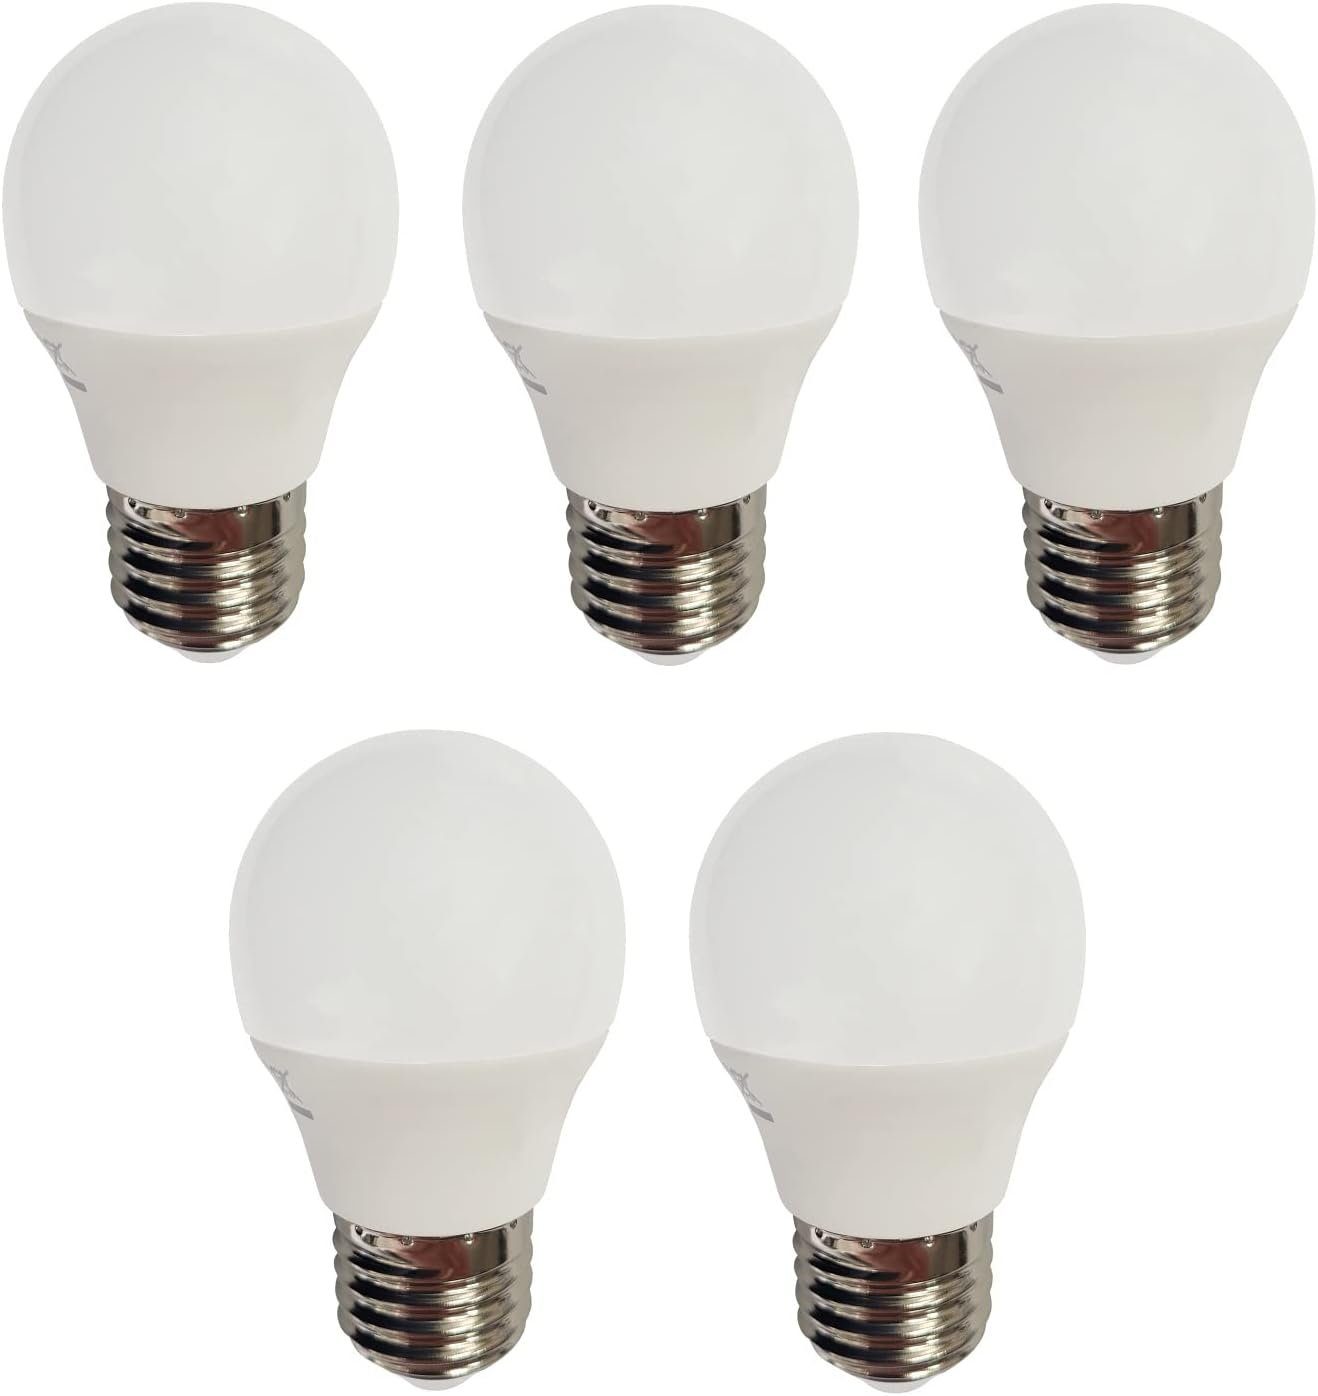 Provance LED-Leuchtmittel 5 x LED Leuchtmittel Kugel E27 4W 320lm 3000K, E27, warmweiß